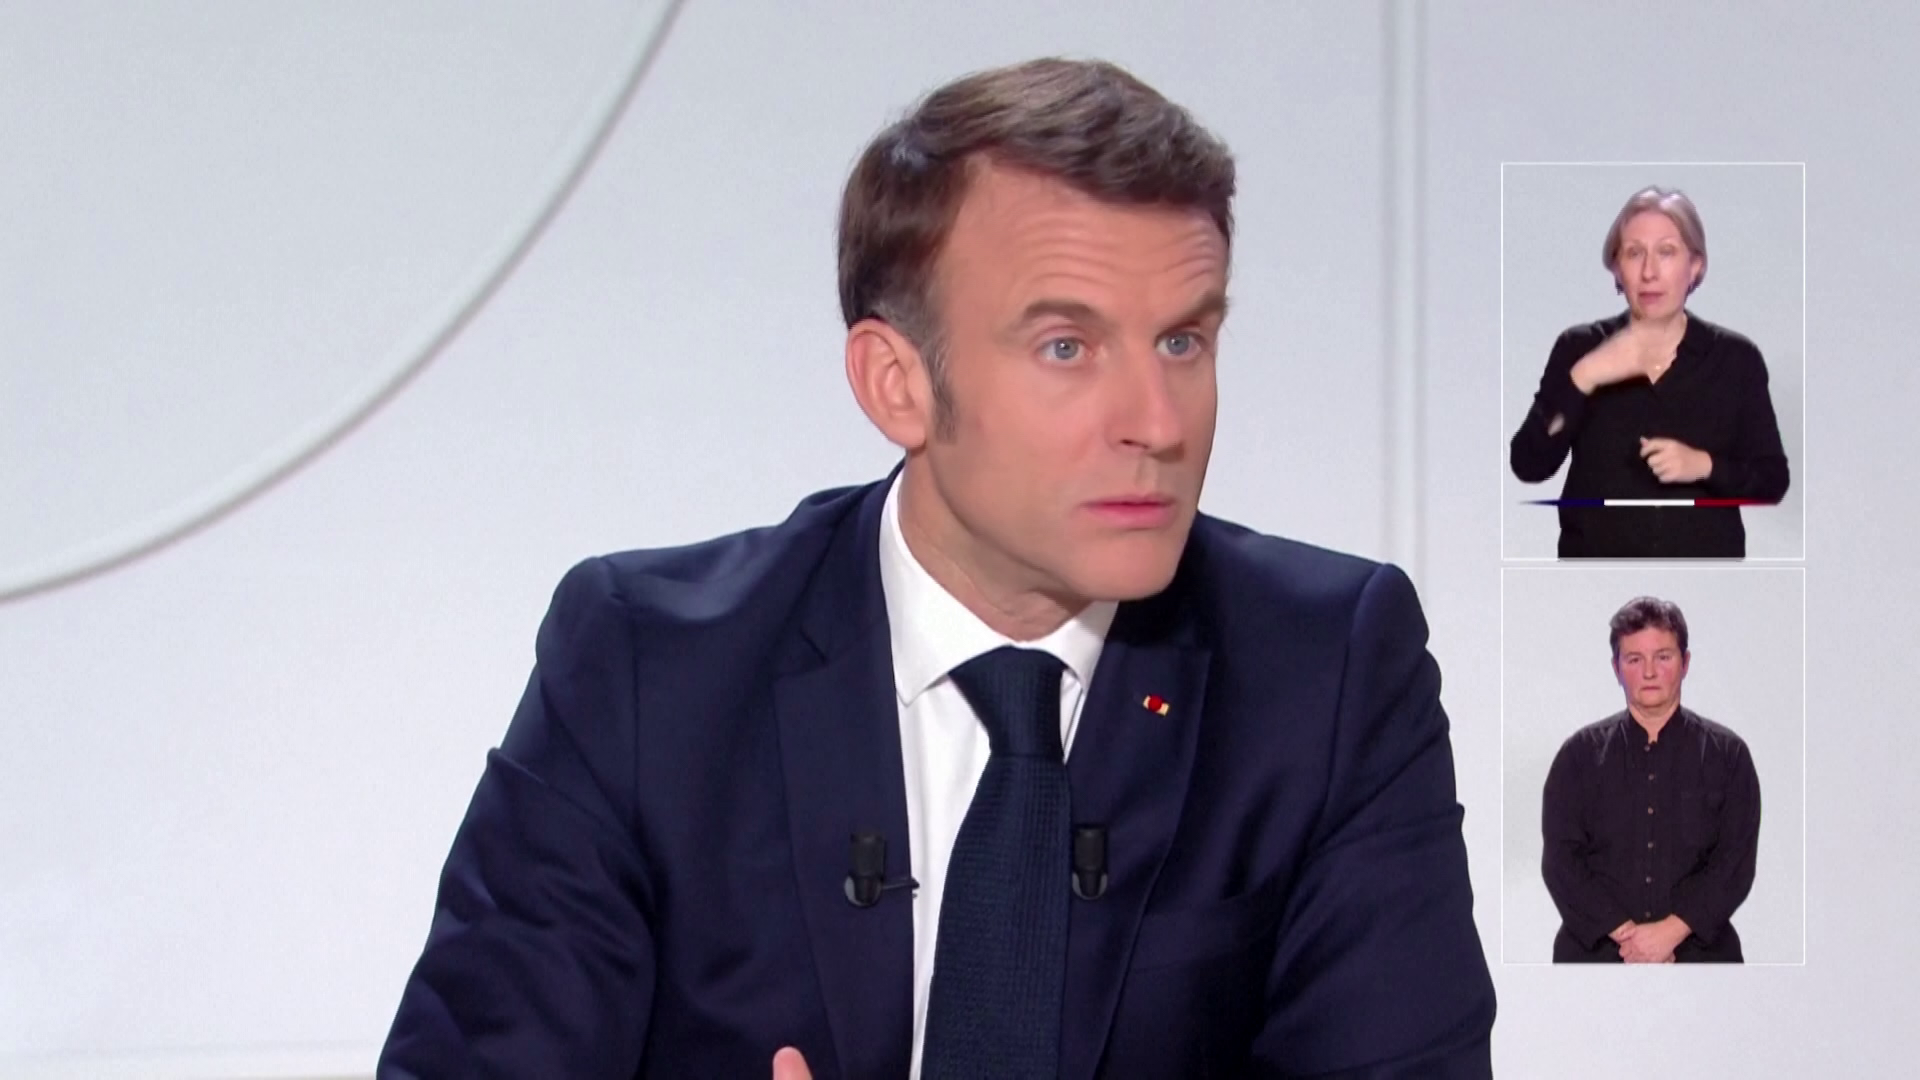 Elemzők szerint a harmadik világháború veszélyével fenyeget Emmanuel Macron terve + videó